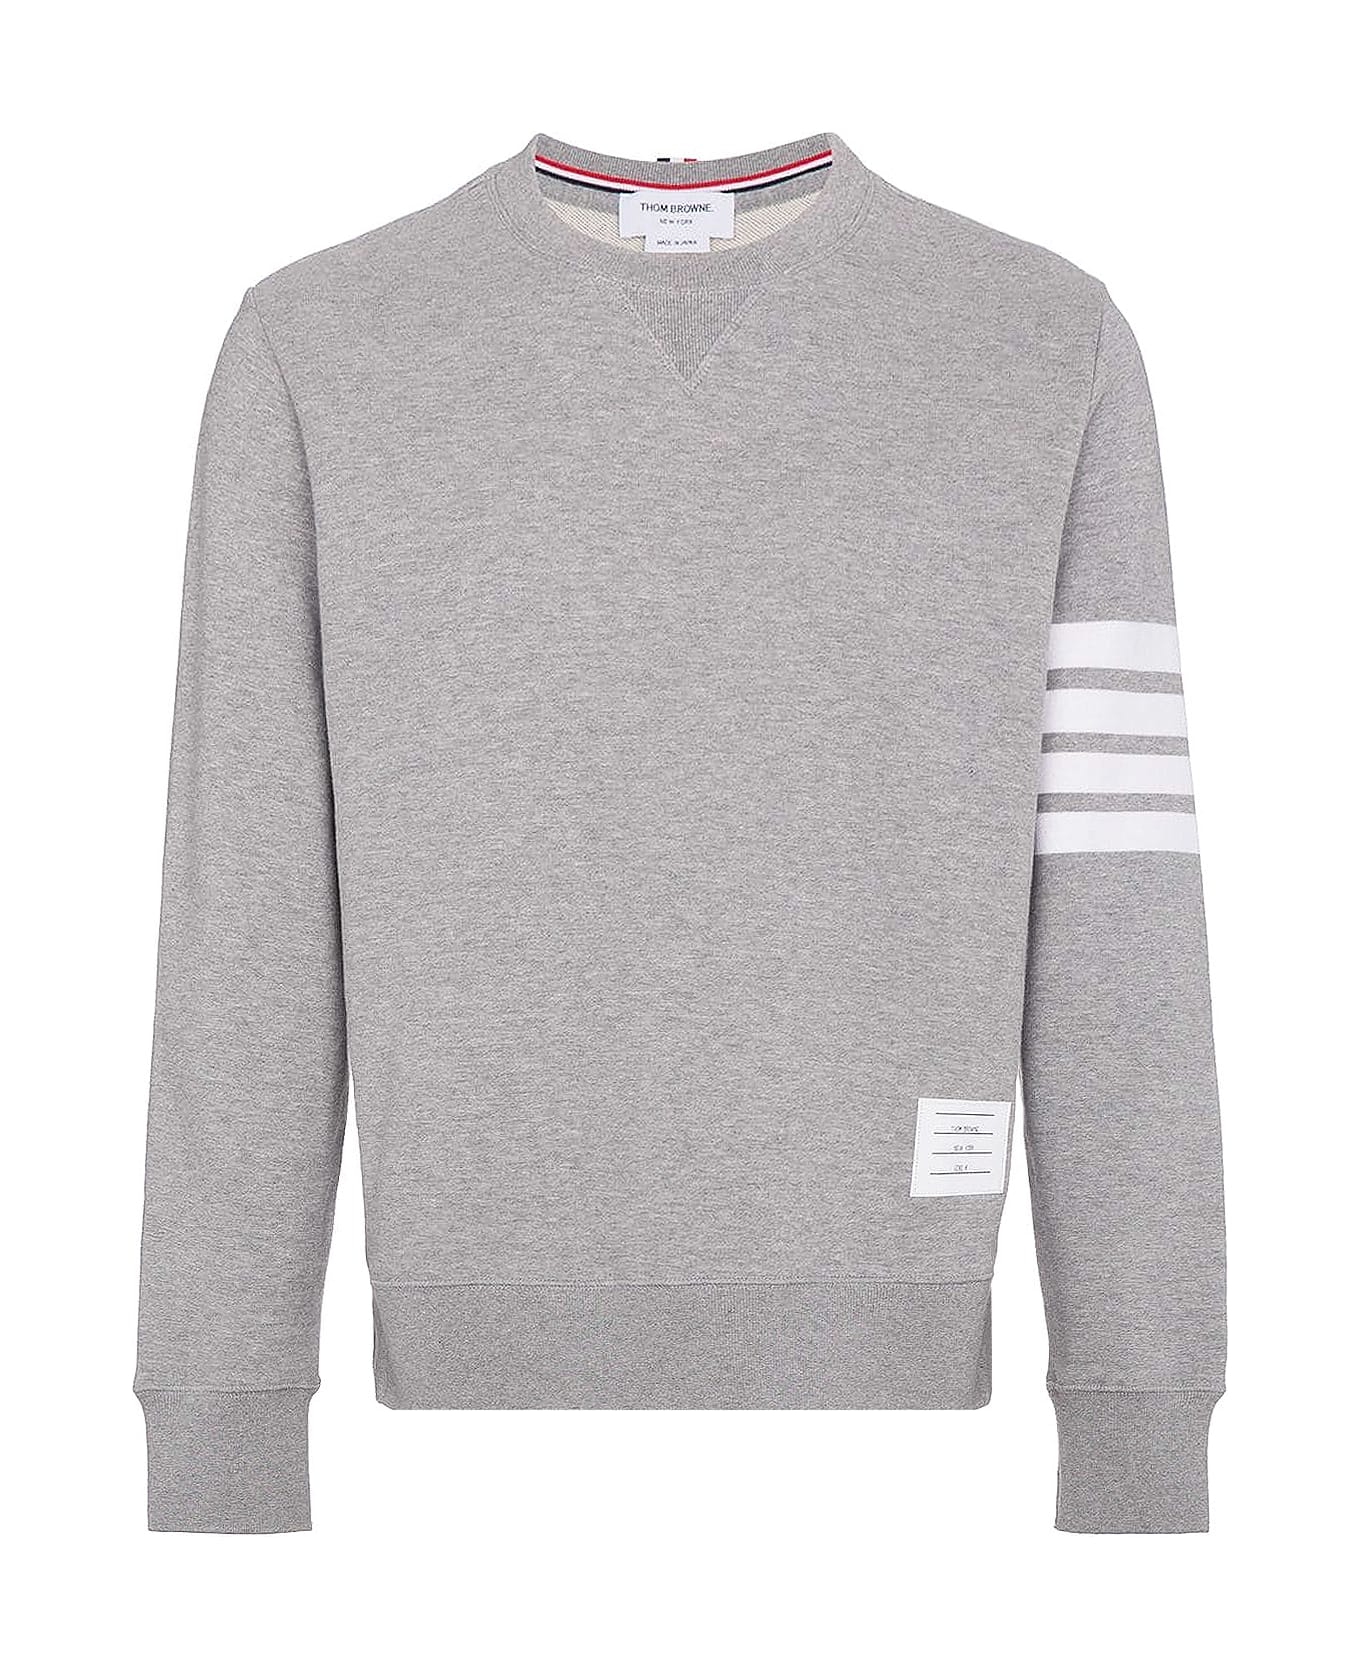 Thom Browne Grey '4-bar' Sweatshirt - Light grey